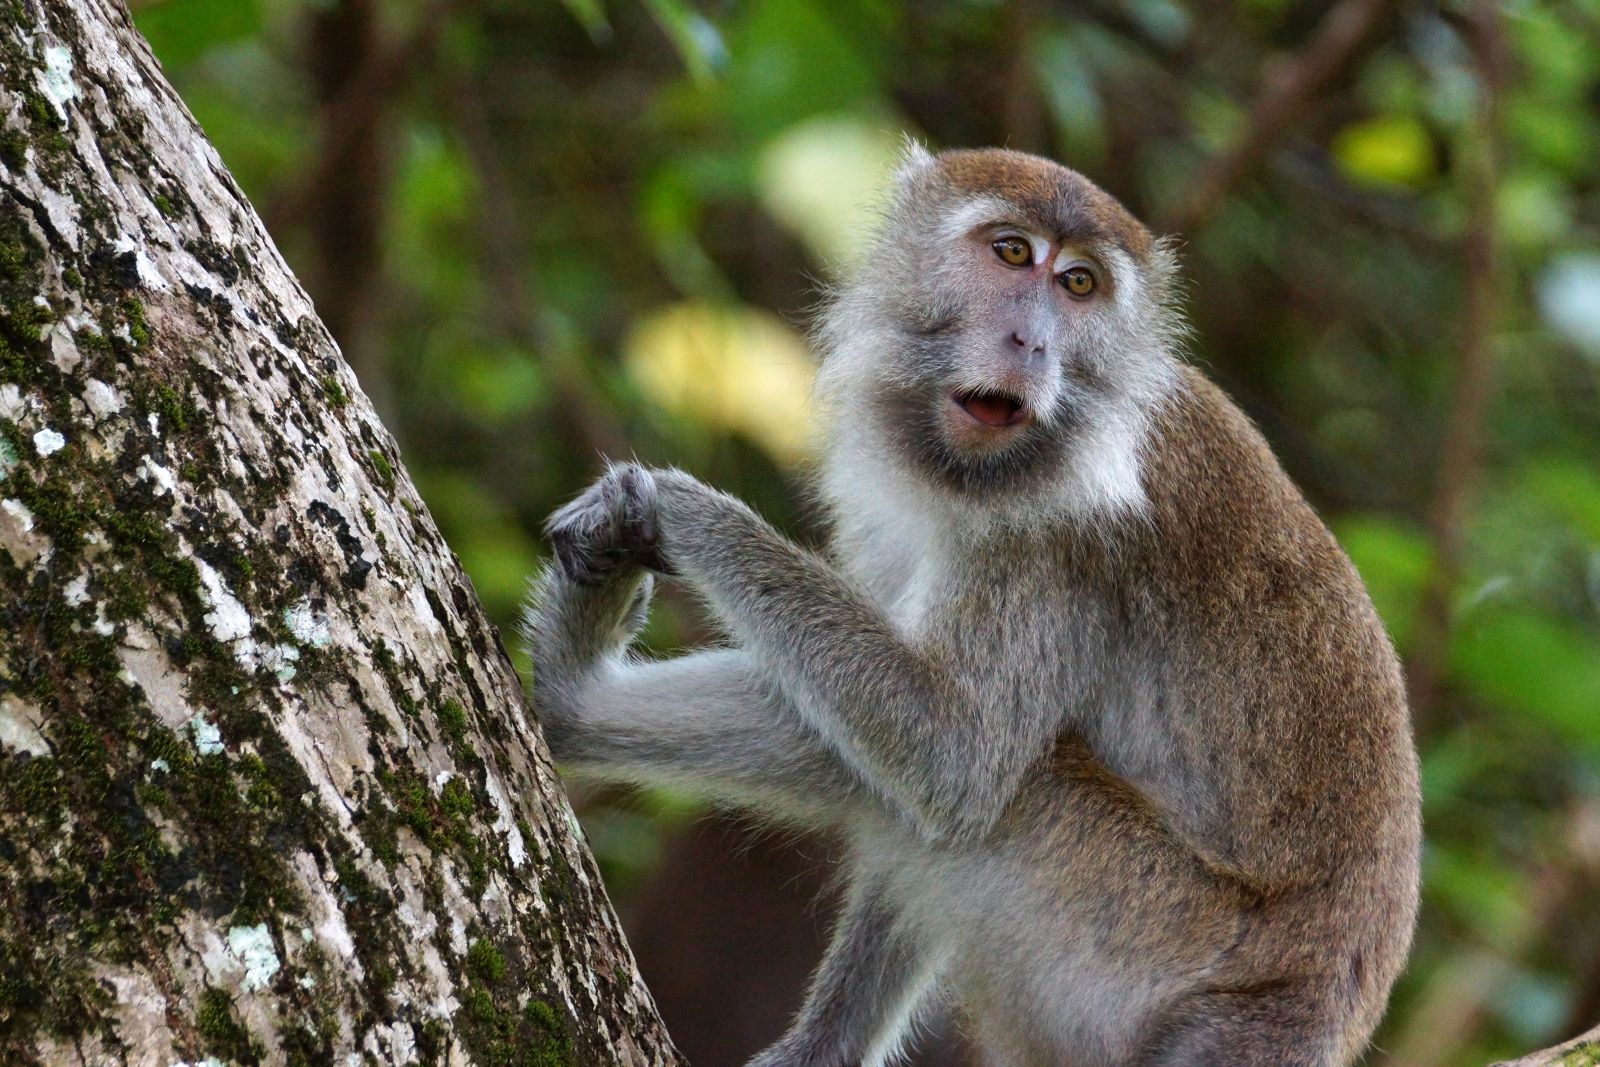 A long tailed Macaque in Taman Negara